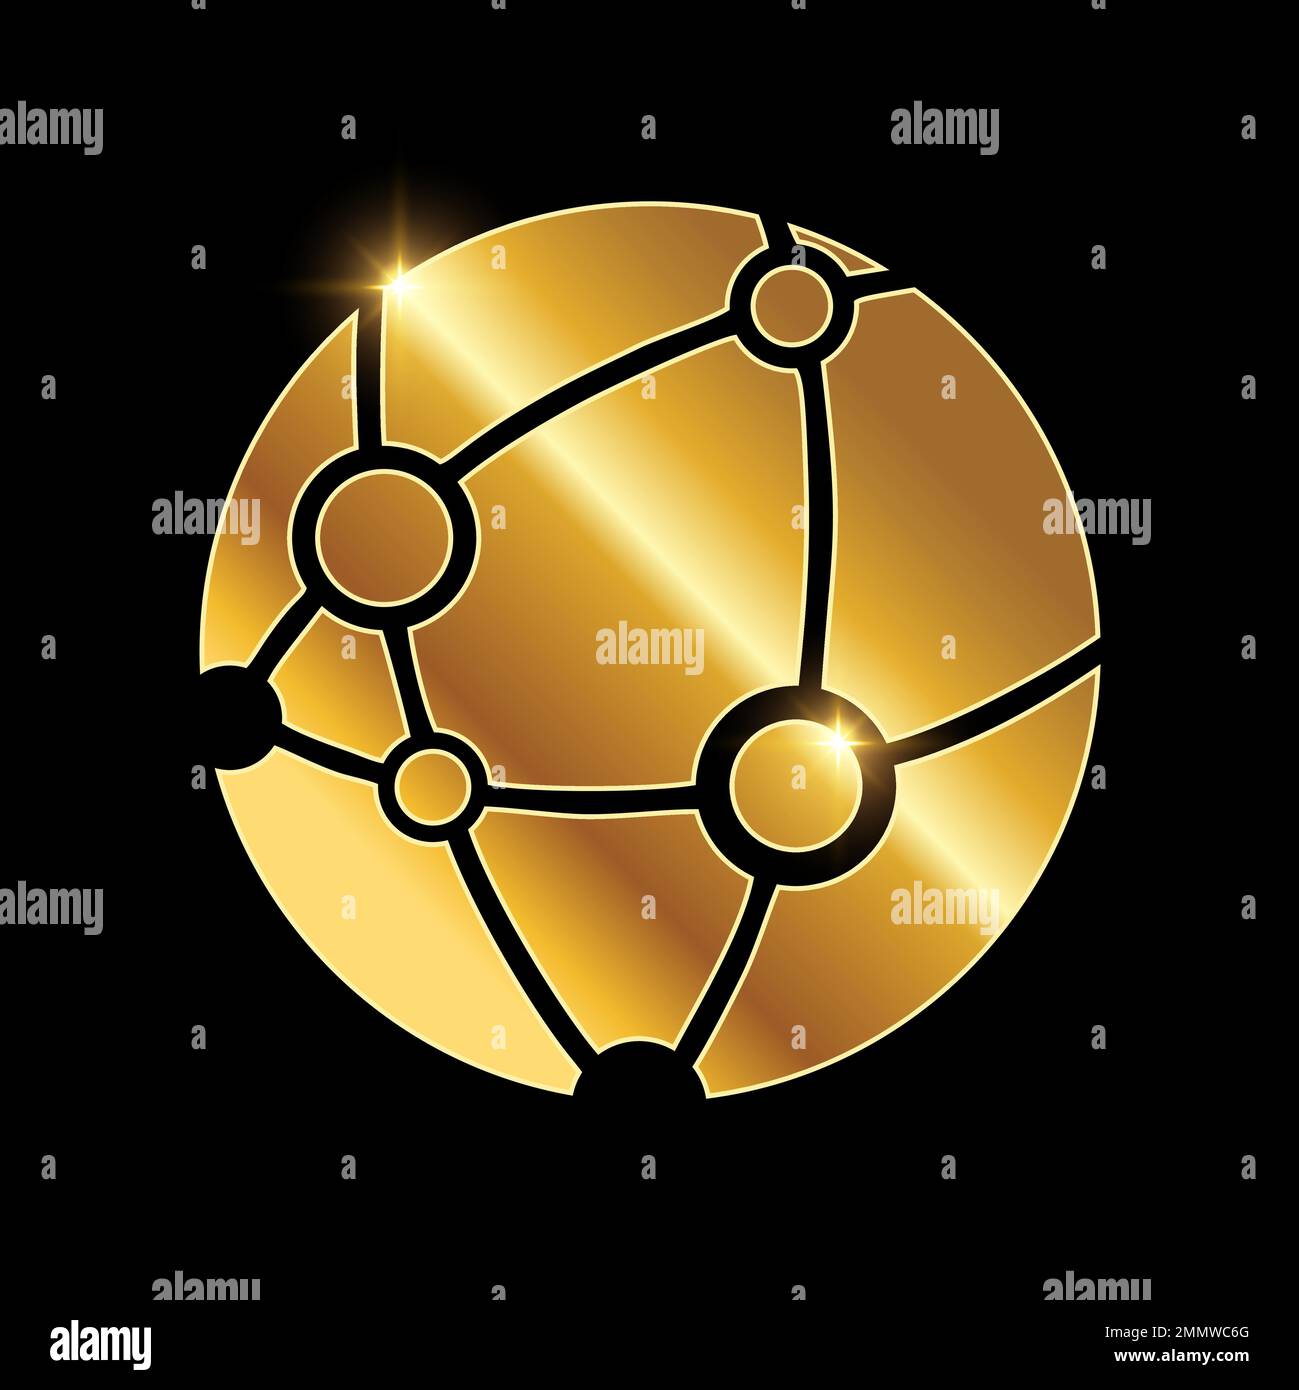 Illustration vectorielle de l'icône Golden Internet Network Vector sur fond noir avec effet brillant doré Illustration de Vecteur